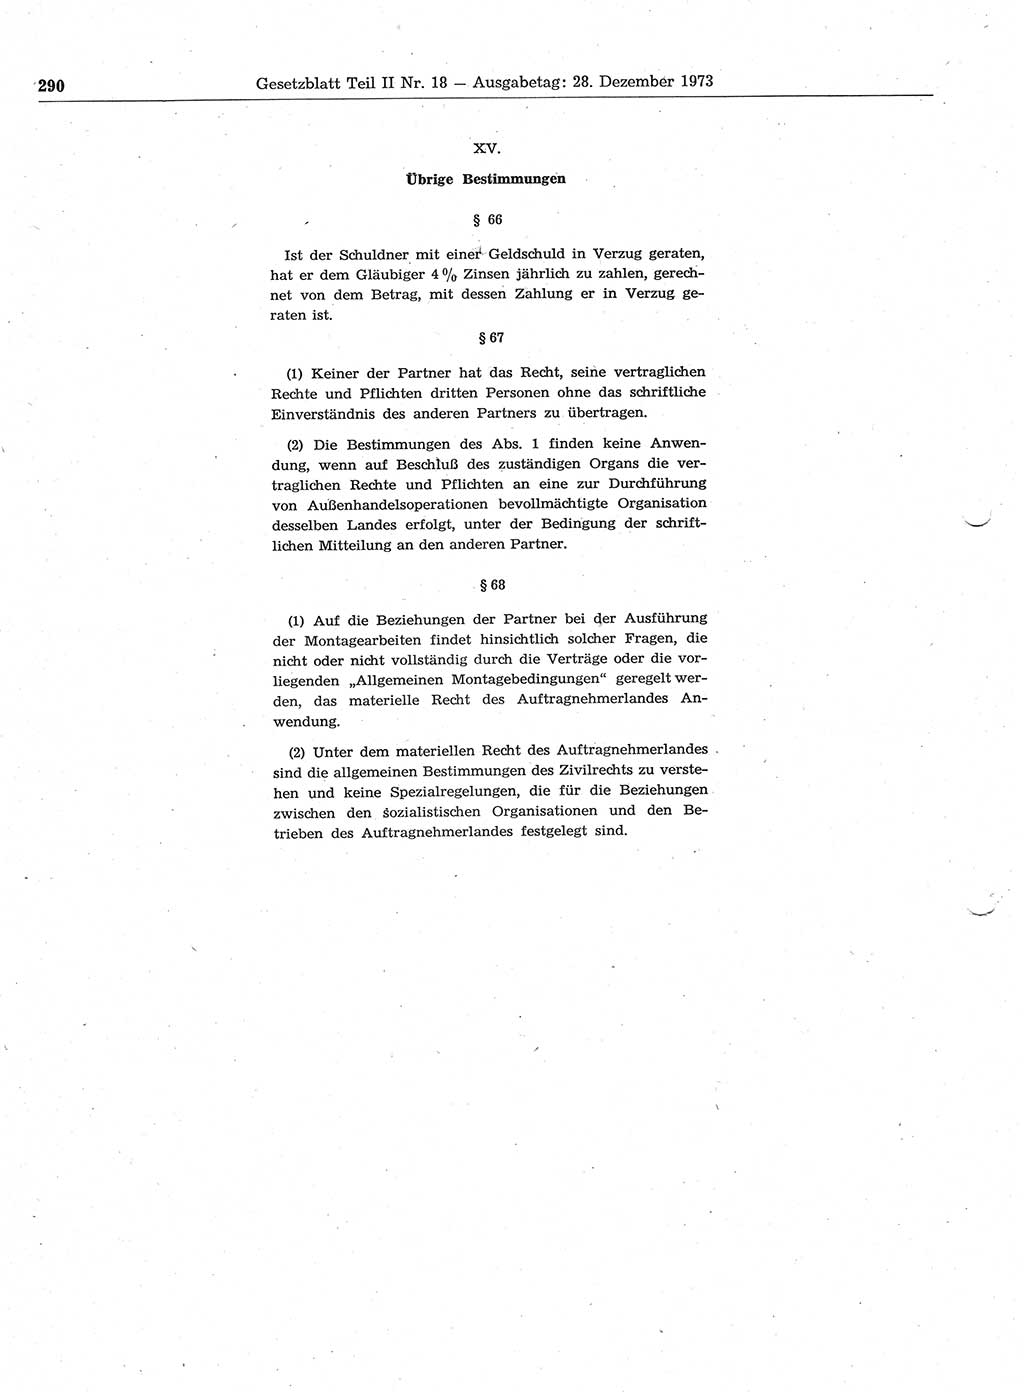 Gesetzblatt (GBl.) der Deutschen Demokratischen Republik (DDR) Teil ⅠⅠ 1973, Seite 290 (GBl. DDR ⅠⅠ 1973, S. 290)